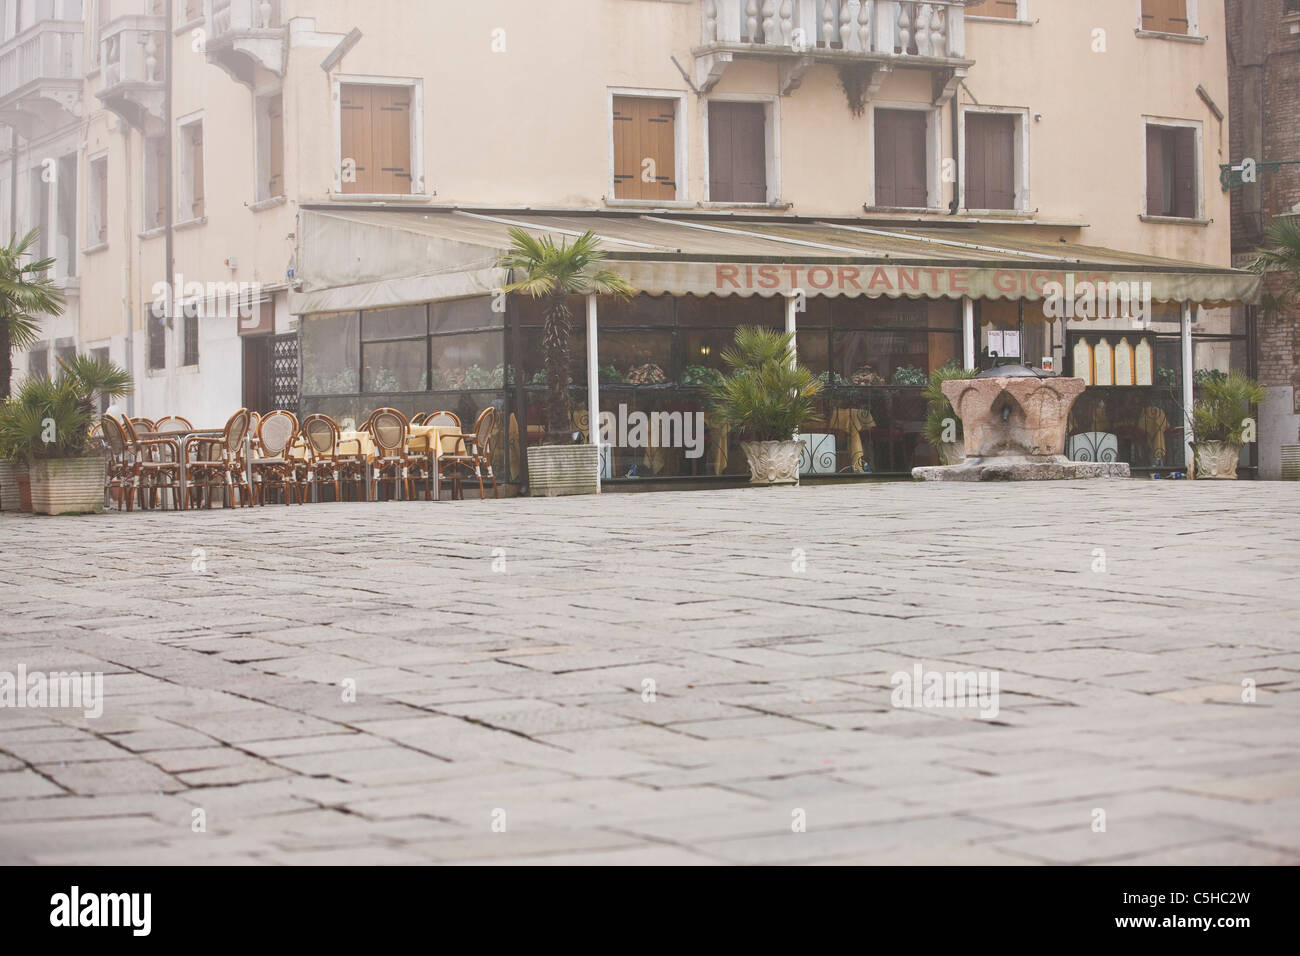 Un restaurant donnant sur une place déserte, Venise, Italie Banque D'Images